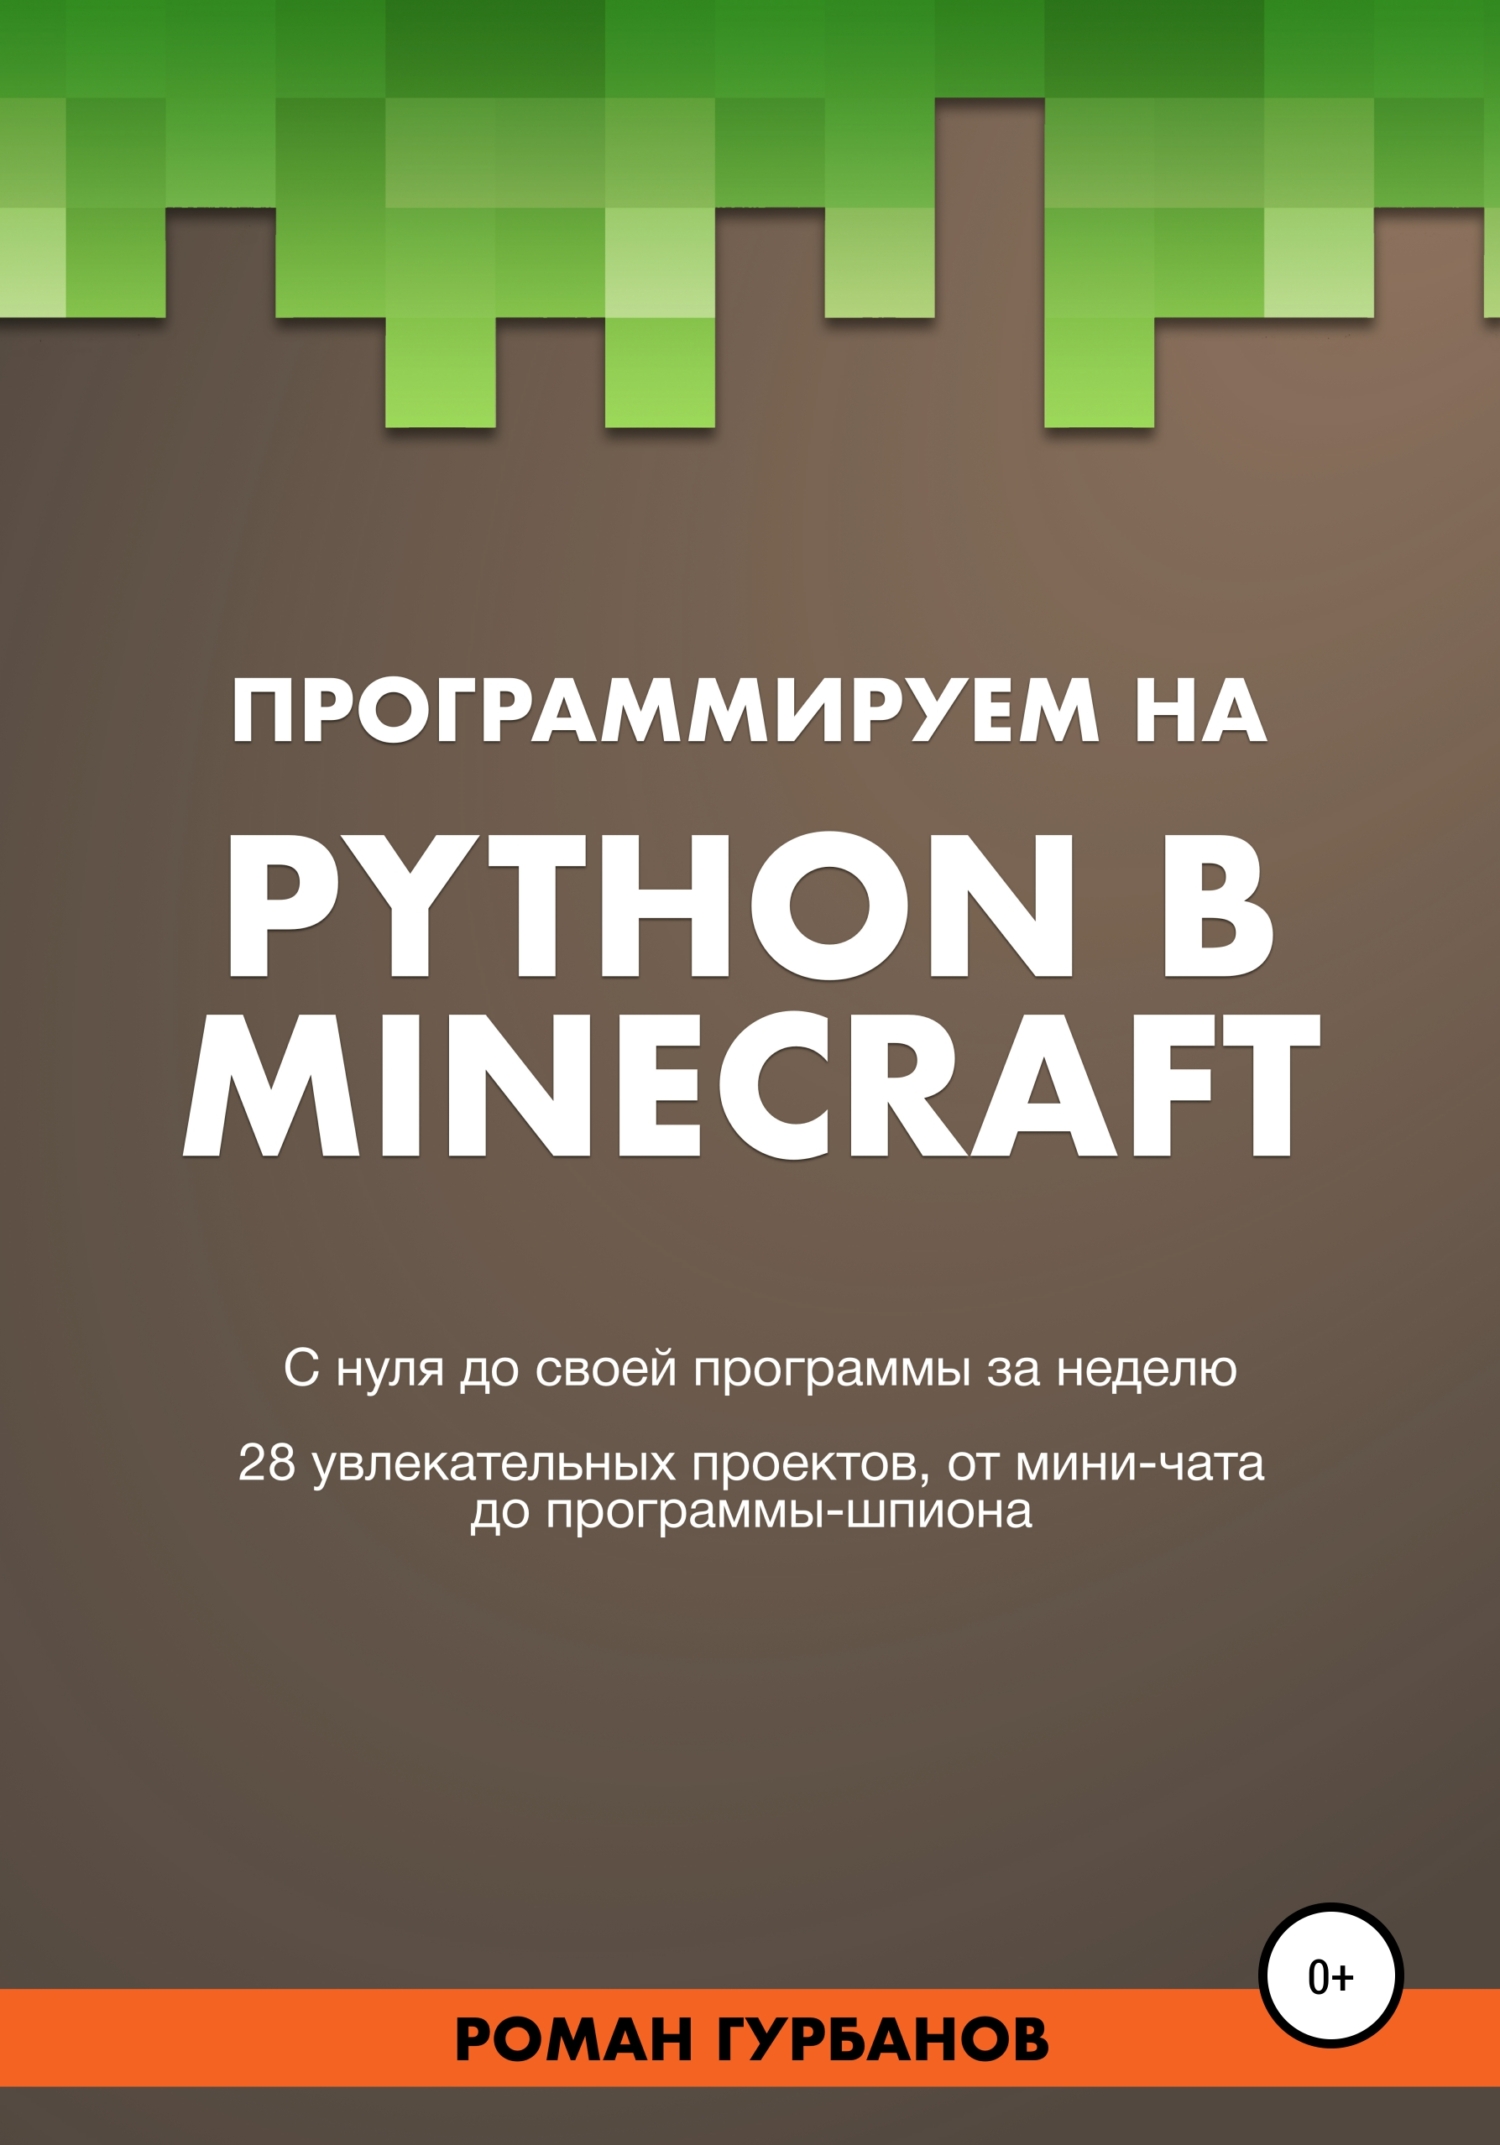 Книга  Программируем на Python в Minecraft созданная Roman Gurbanov может относится к жанру информатика и вычислительная техника, книги для подростков, программирование. Стоимость электронной книги Программируем на Python в Minecraft с идентификатором 63469453 составляет 89.90 руб.